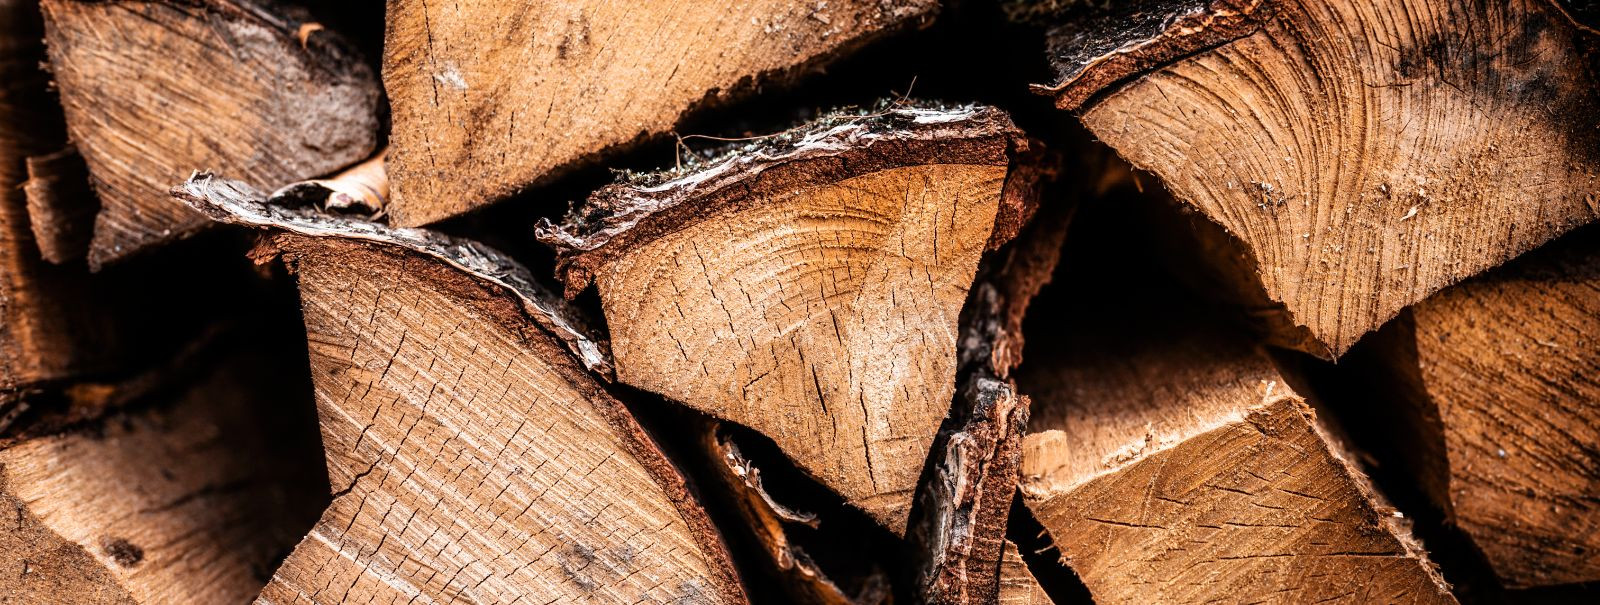 Küttepuude valimisel on oluline mõista kõvade ja pehmete puidude vahet. Kõvad puidud, nagu tamm ja vaher, on tihedamad ja pakuvad pikemaajalist soojust, muutes